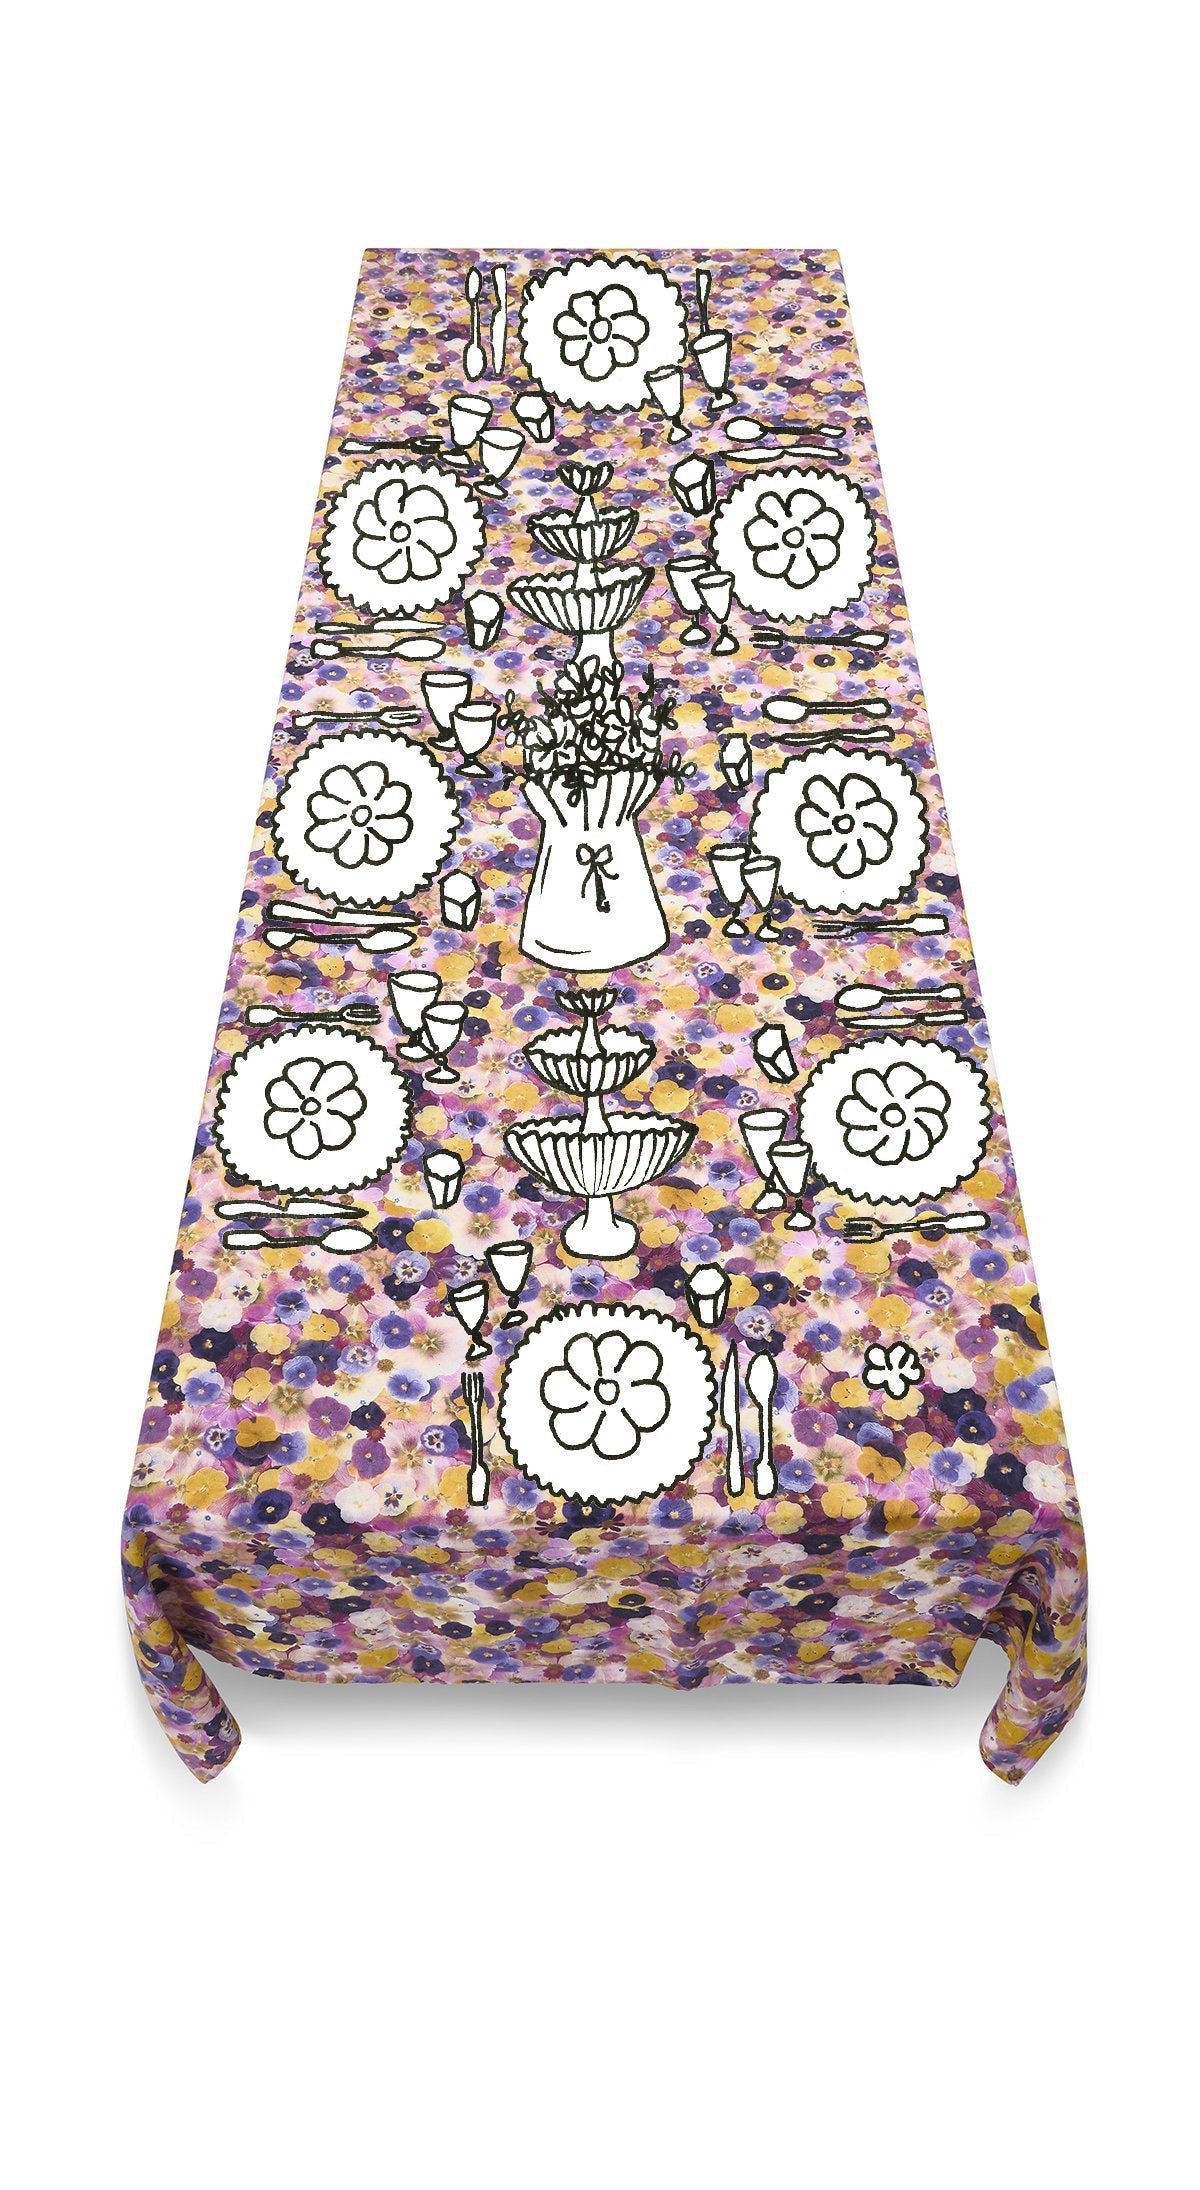 Le Marché aux Fleurs Linen Tablecloth in Multicolours